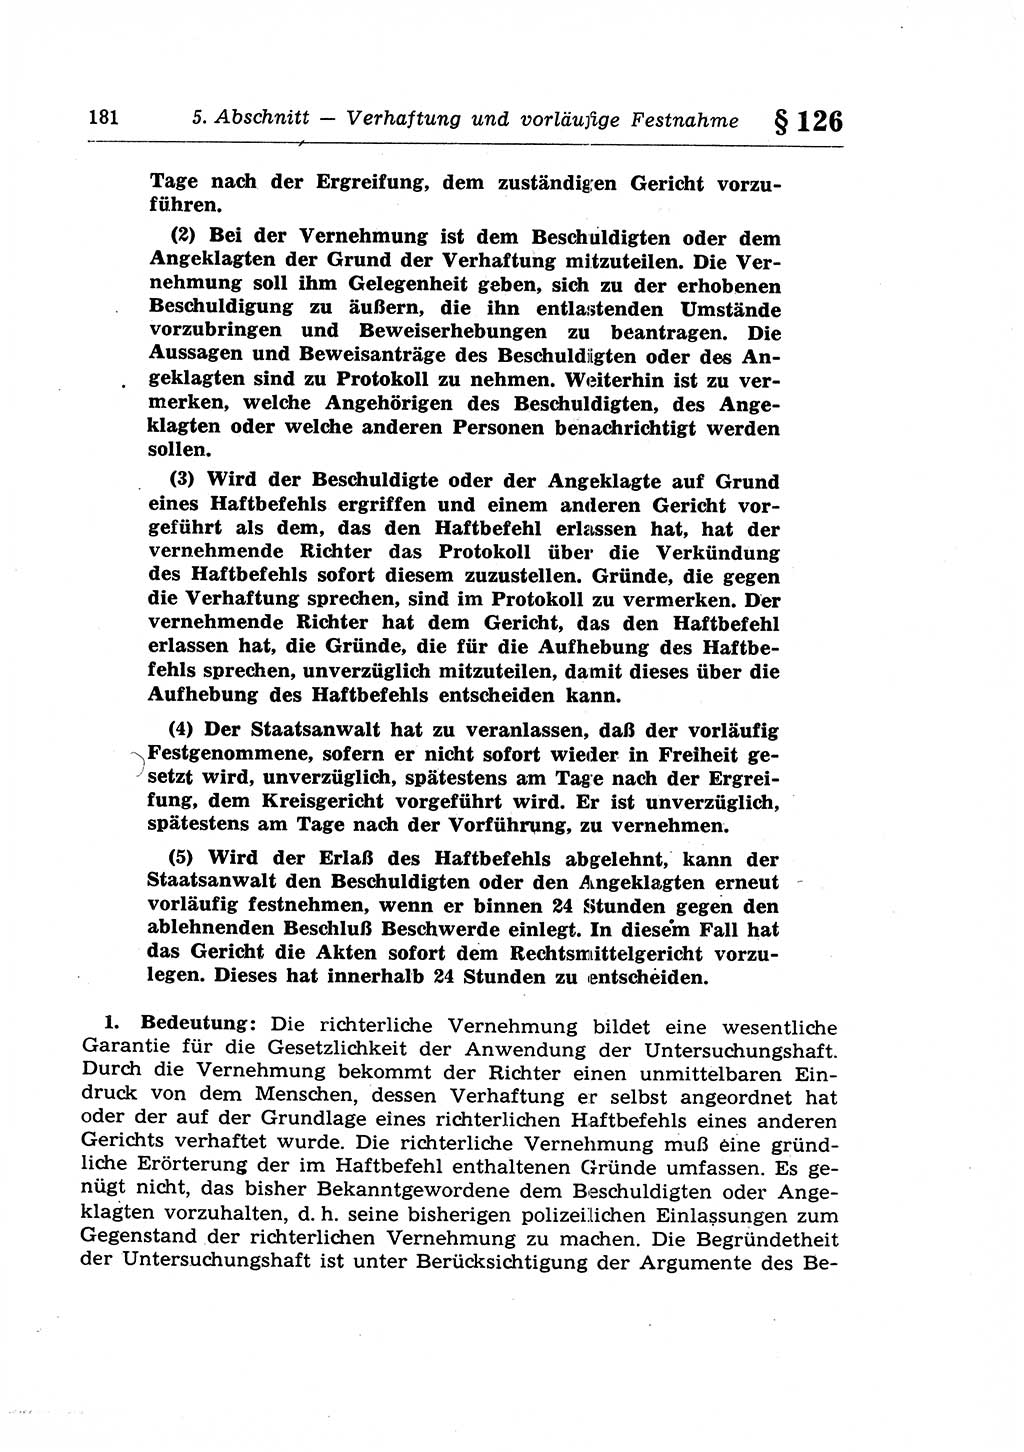 Strafprozeßrecht der DDR (Deutsche Demokratische Republik), Lehrkommentar zur Strafprozeßordnung (StPO) 1968, Seite 181 (Strafprozeßr. DDR Lehrkomm. StPO 19688, S. 181)